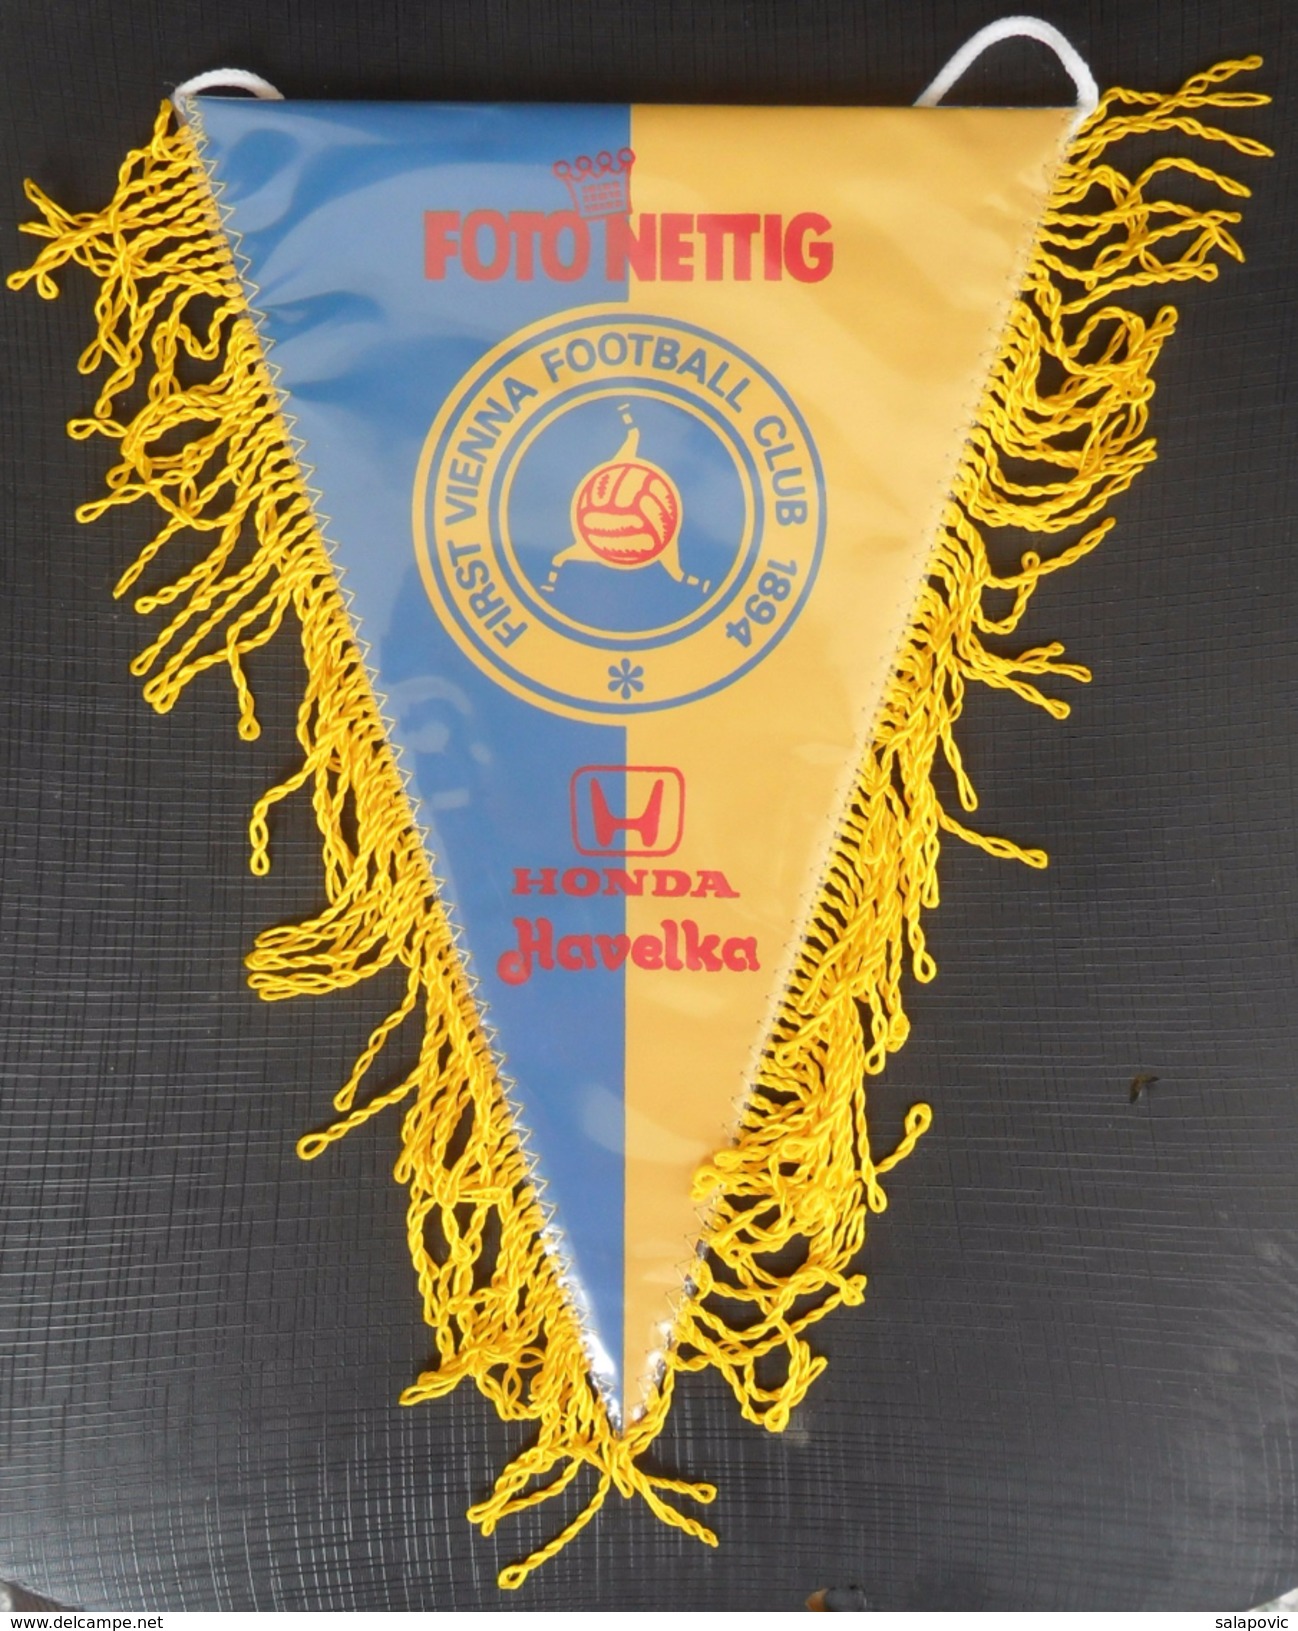 First Vienna FC AUSTRIA FOOTBALL CLUB, SOCCER / FUTBOL / CALCIO OLD PENNANT, SPORTS FLAG - Abbigliamento, Souvenirs & Varie